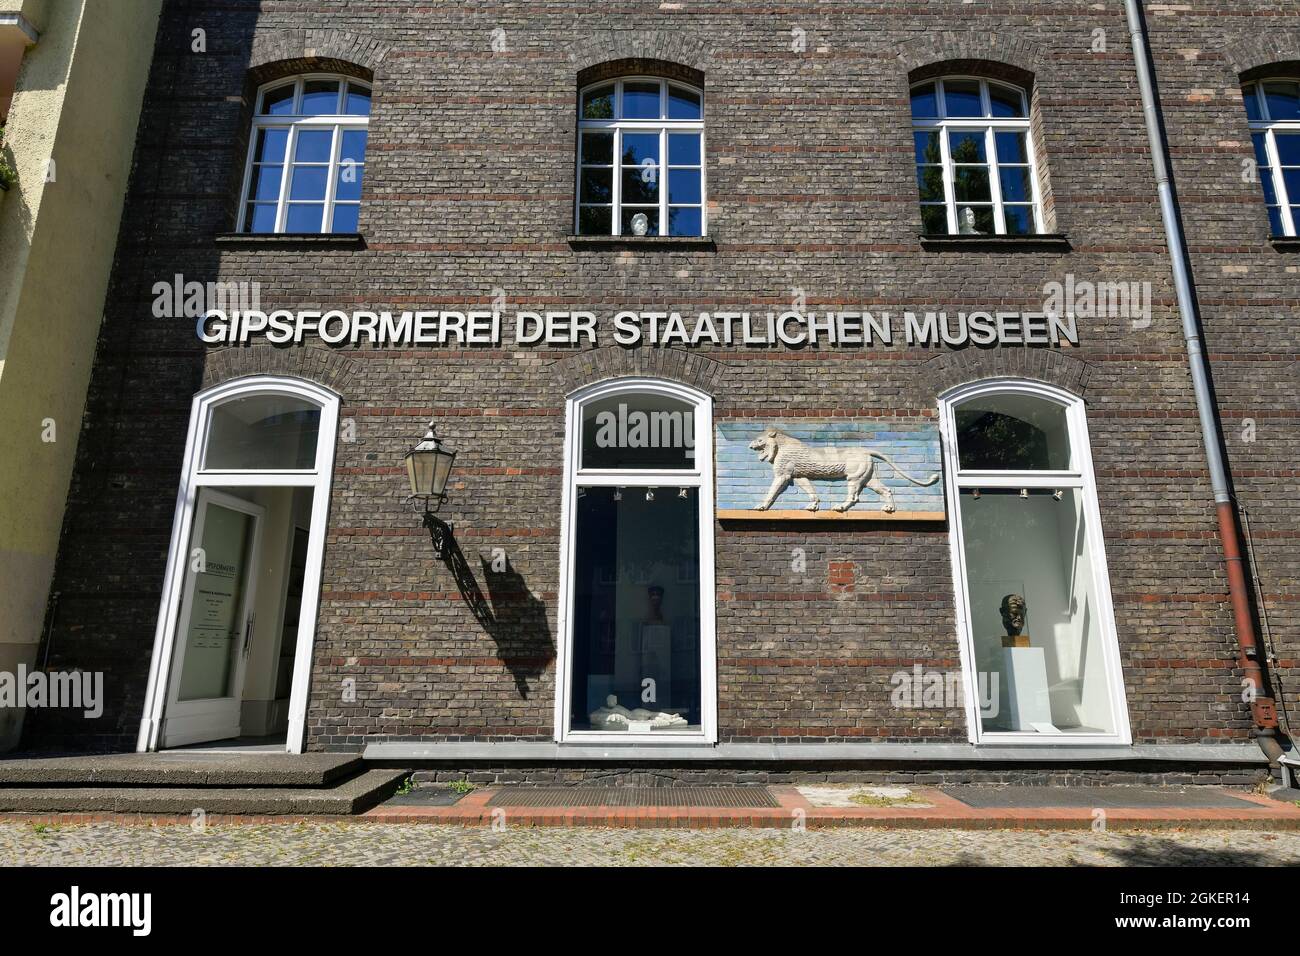 Gipsformerei der Staatlichen Museen, Sophie-Charlotten-Straße, Charlottenburg, Berlin, Deutschland Stockfoto